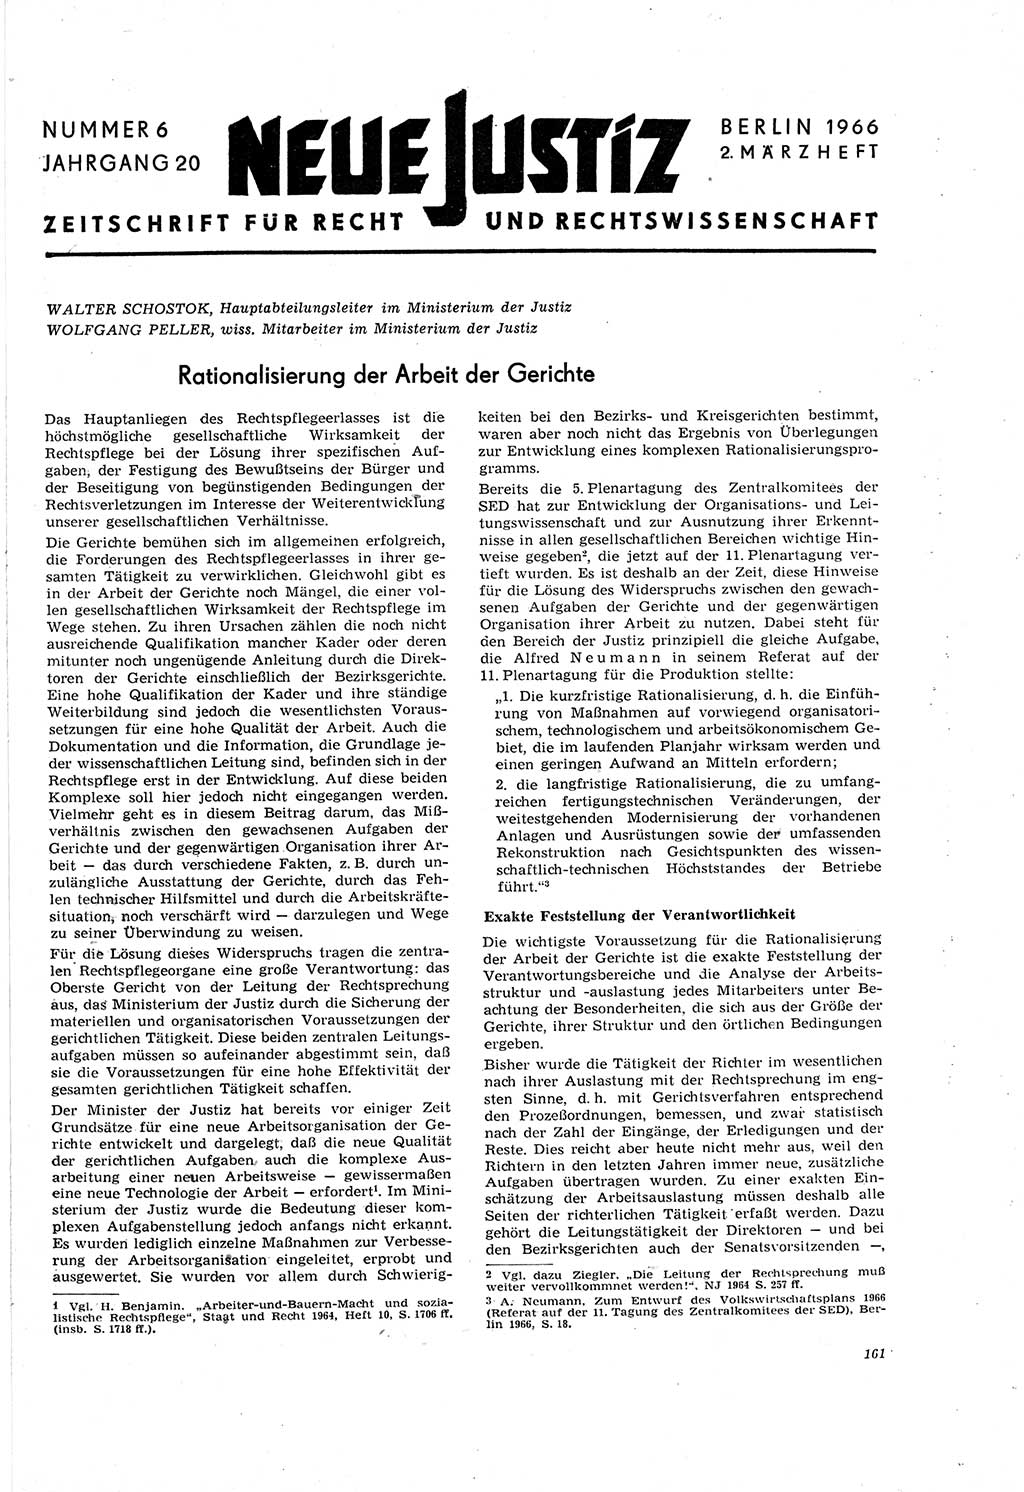 Neue Justiz (NJ), Zeitschrift für Recht und Rechtswissenschaft [Deutsche Demokratische Republik (DDR)], 20. Jahrgang 1966, Seite 161 (NJ DDR 1966, S. 161)